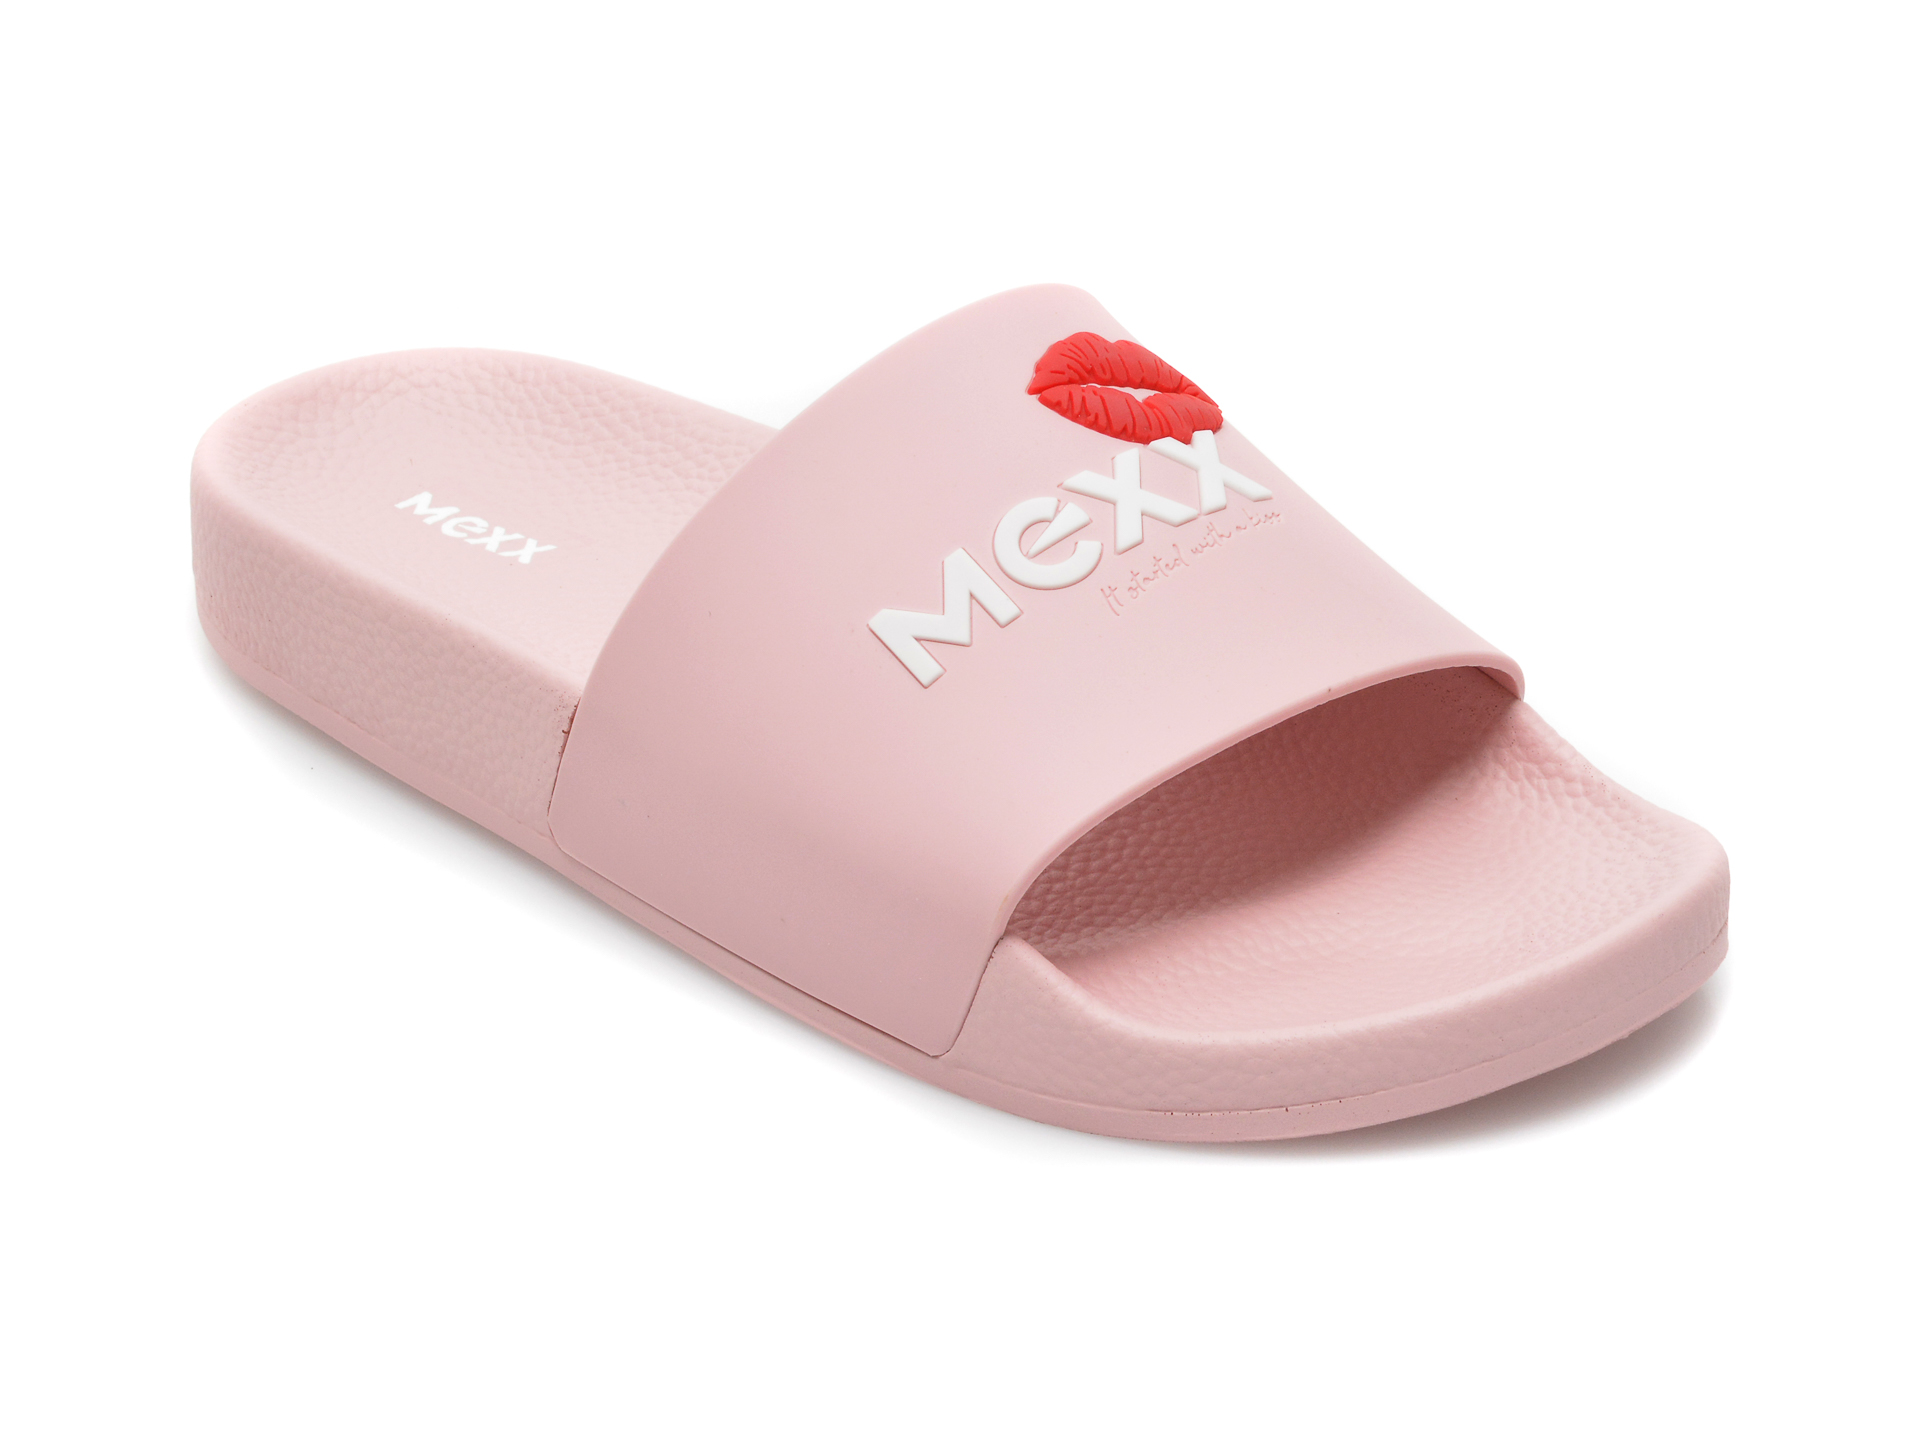 Papuci MEXX roz, SN0014, din piele ecologica Mexx